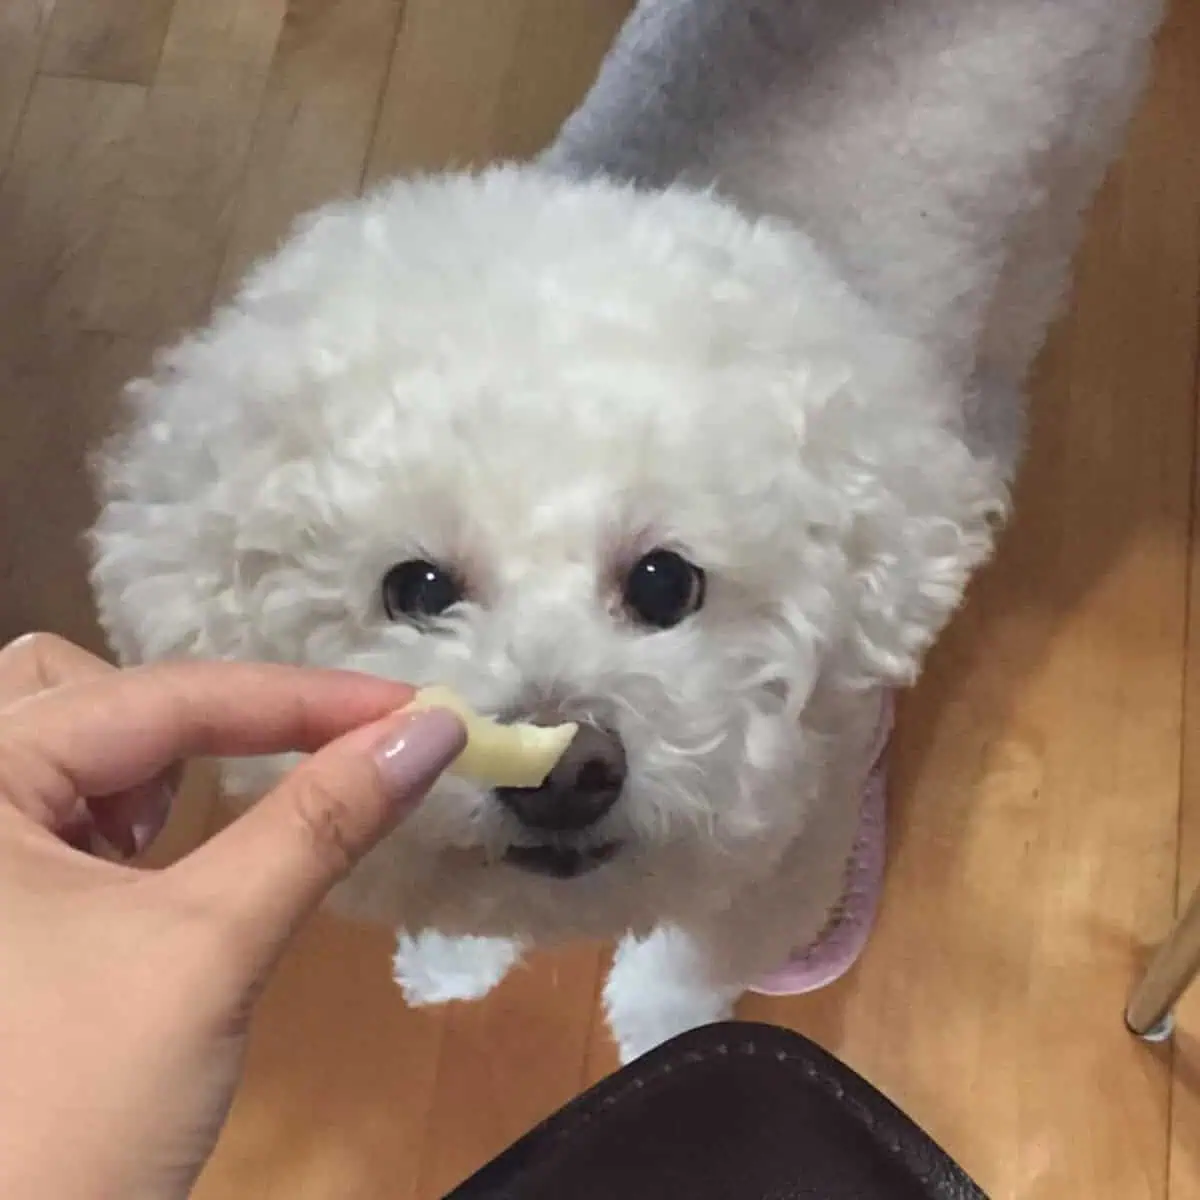 Poodle gets a treat